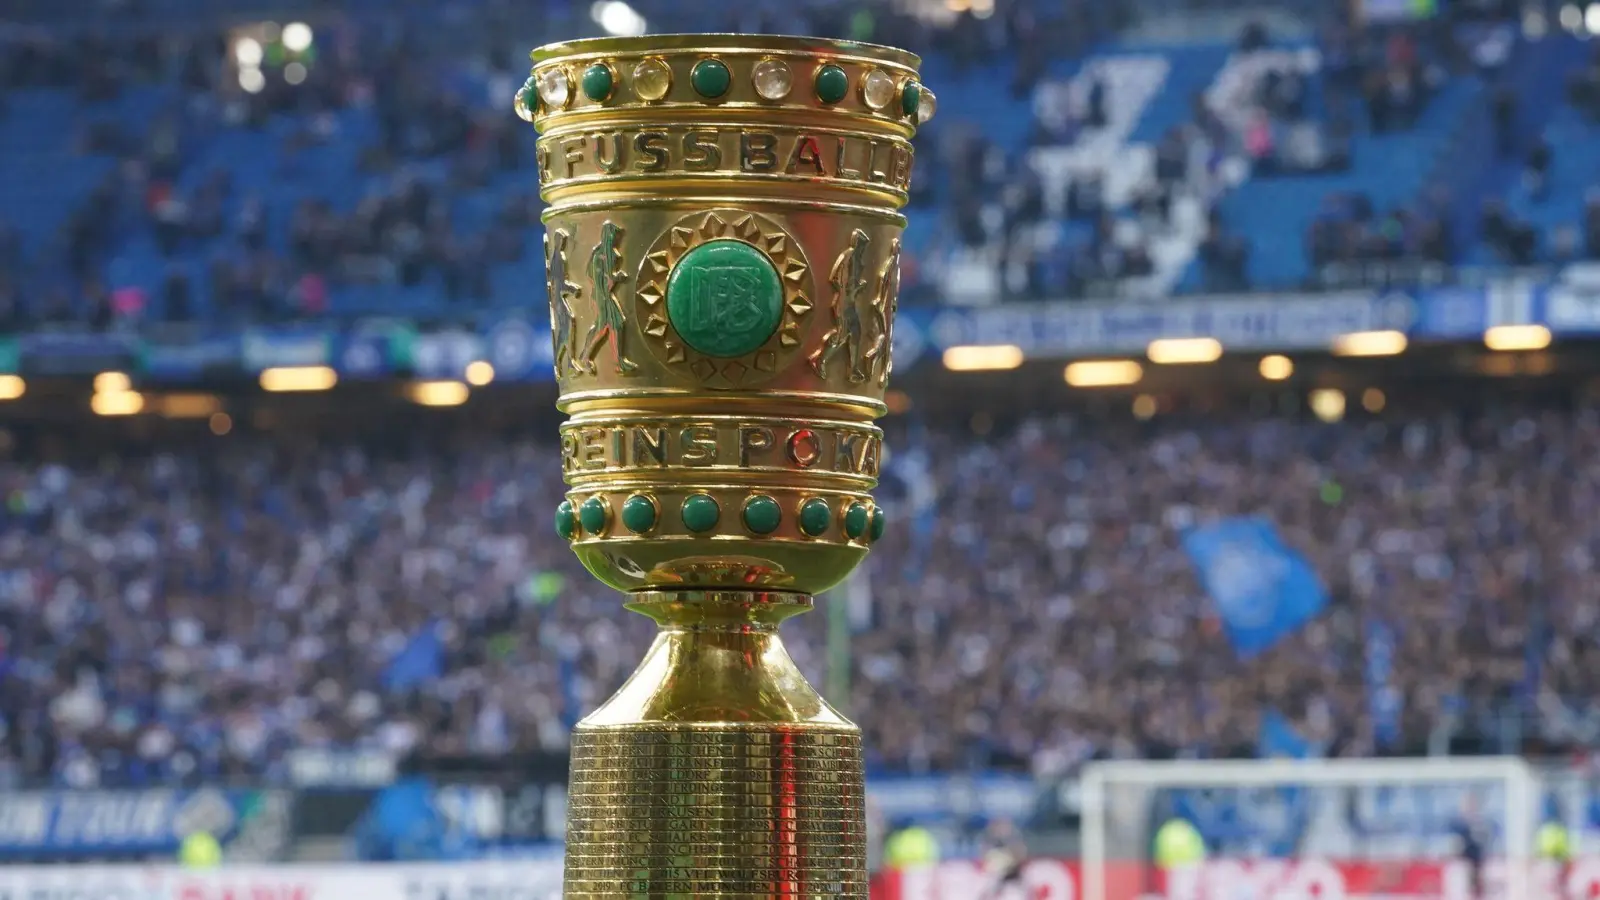 Der DFB-Pokal steht auf einem Podest im Stadion. (Foto: Marcus Brandt/dpa/Symbolbild)